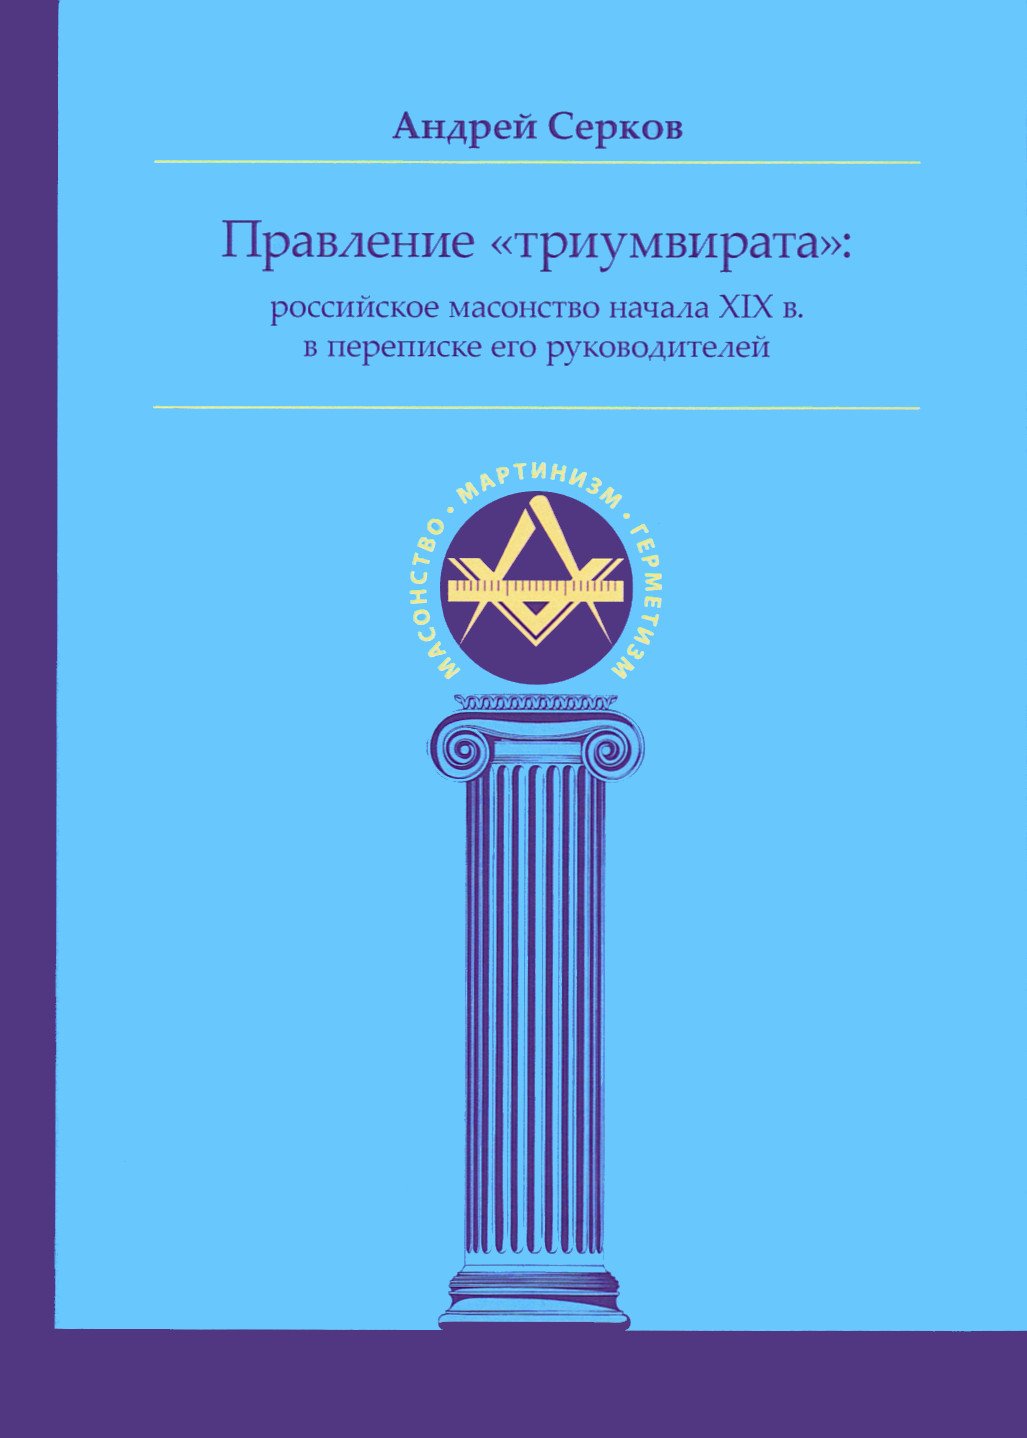 Правление «триумвирата»: российское масонство начала XIX в. в переписке его руководителей. 